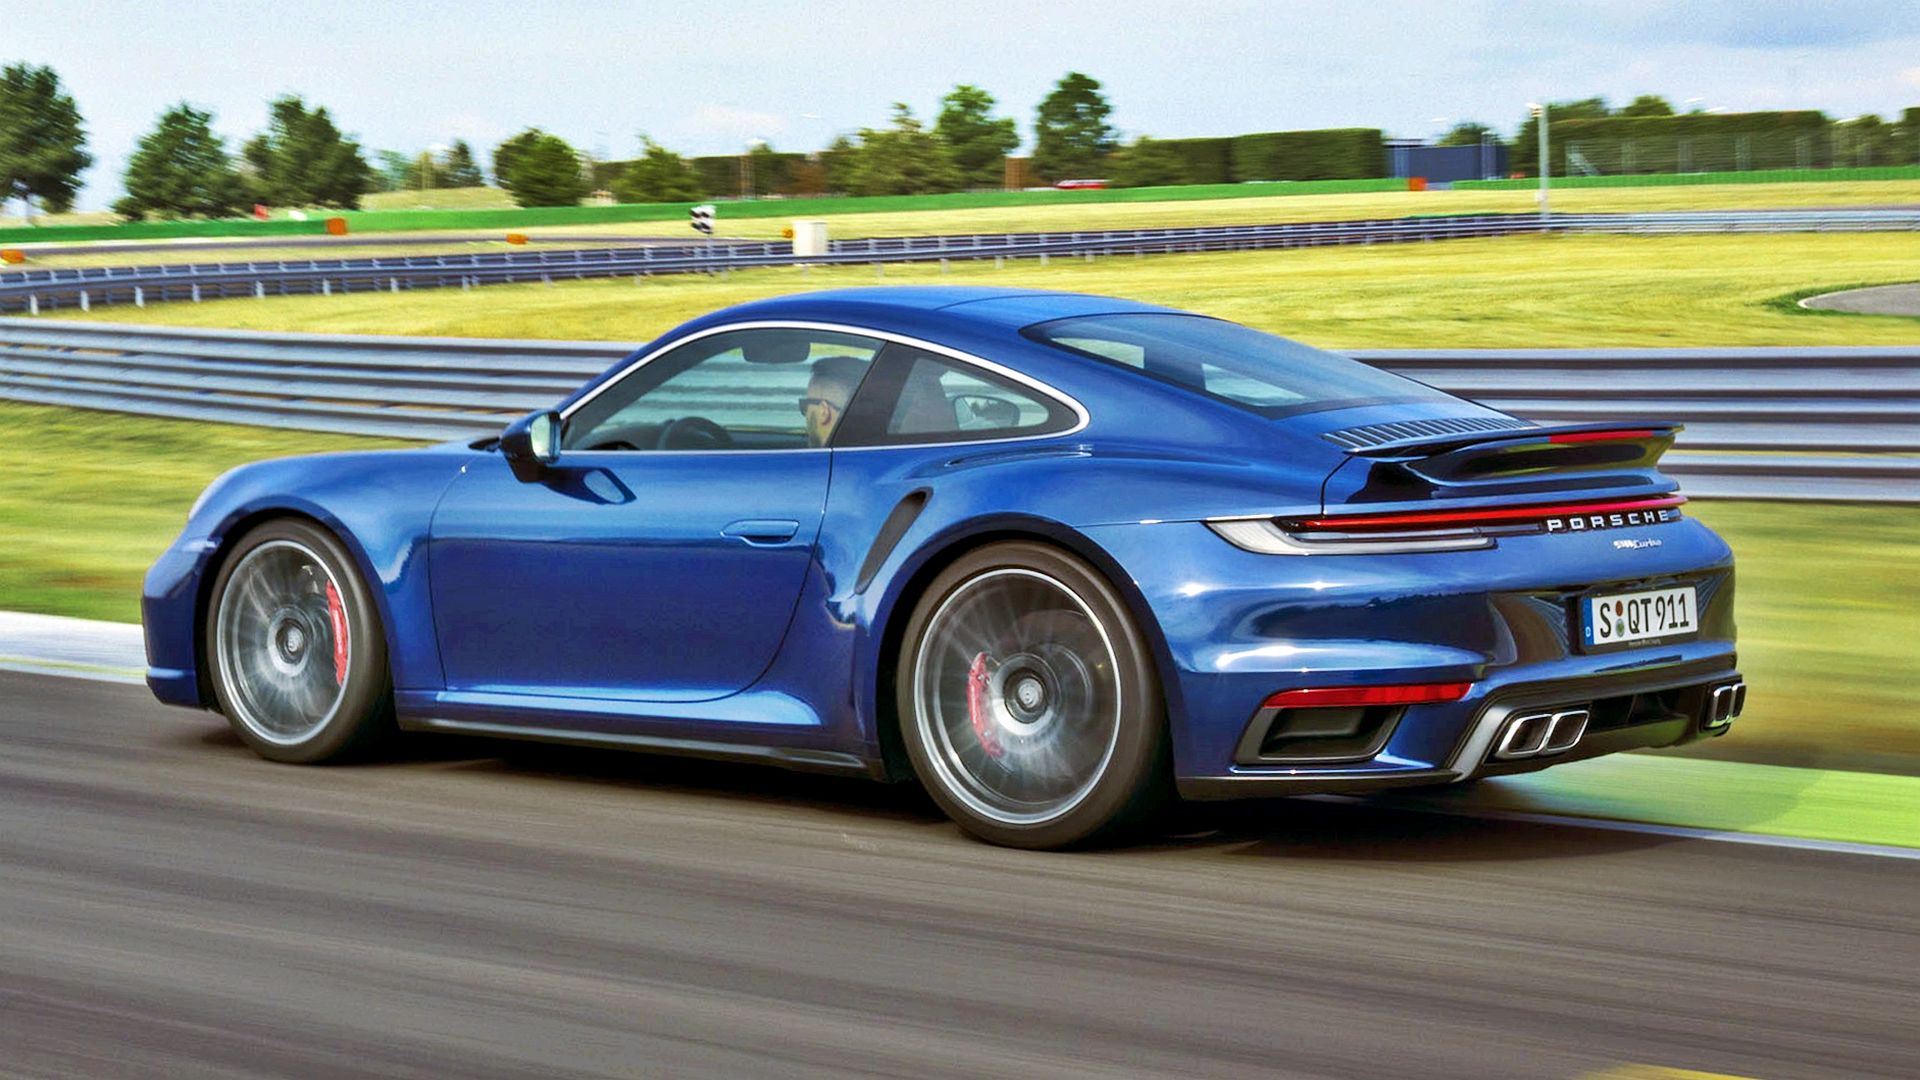 Nowe Porsche 911 Turbo ma 580 KM i kosztuje prawie milion zł